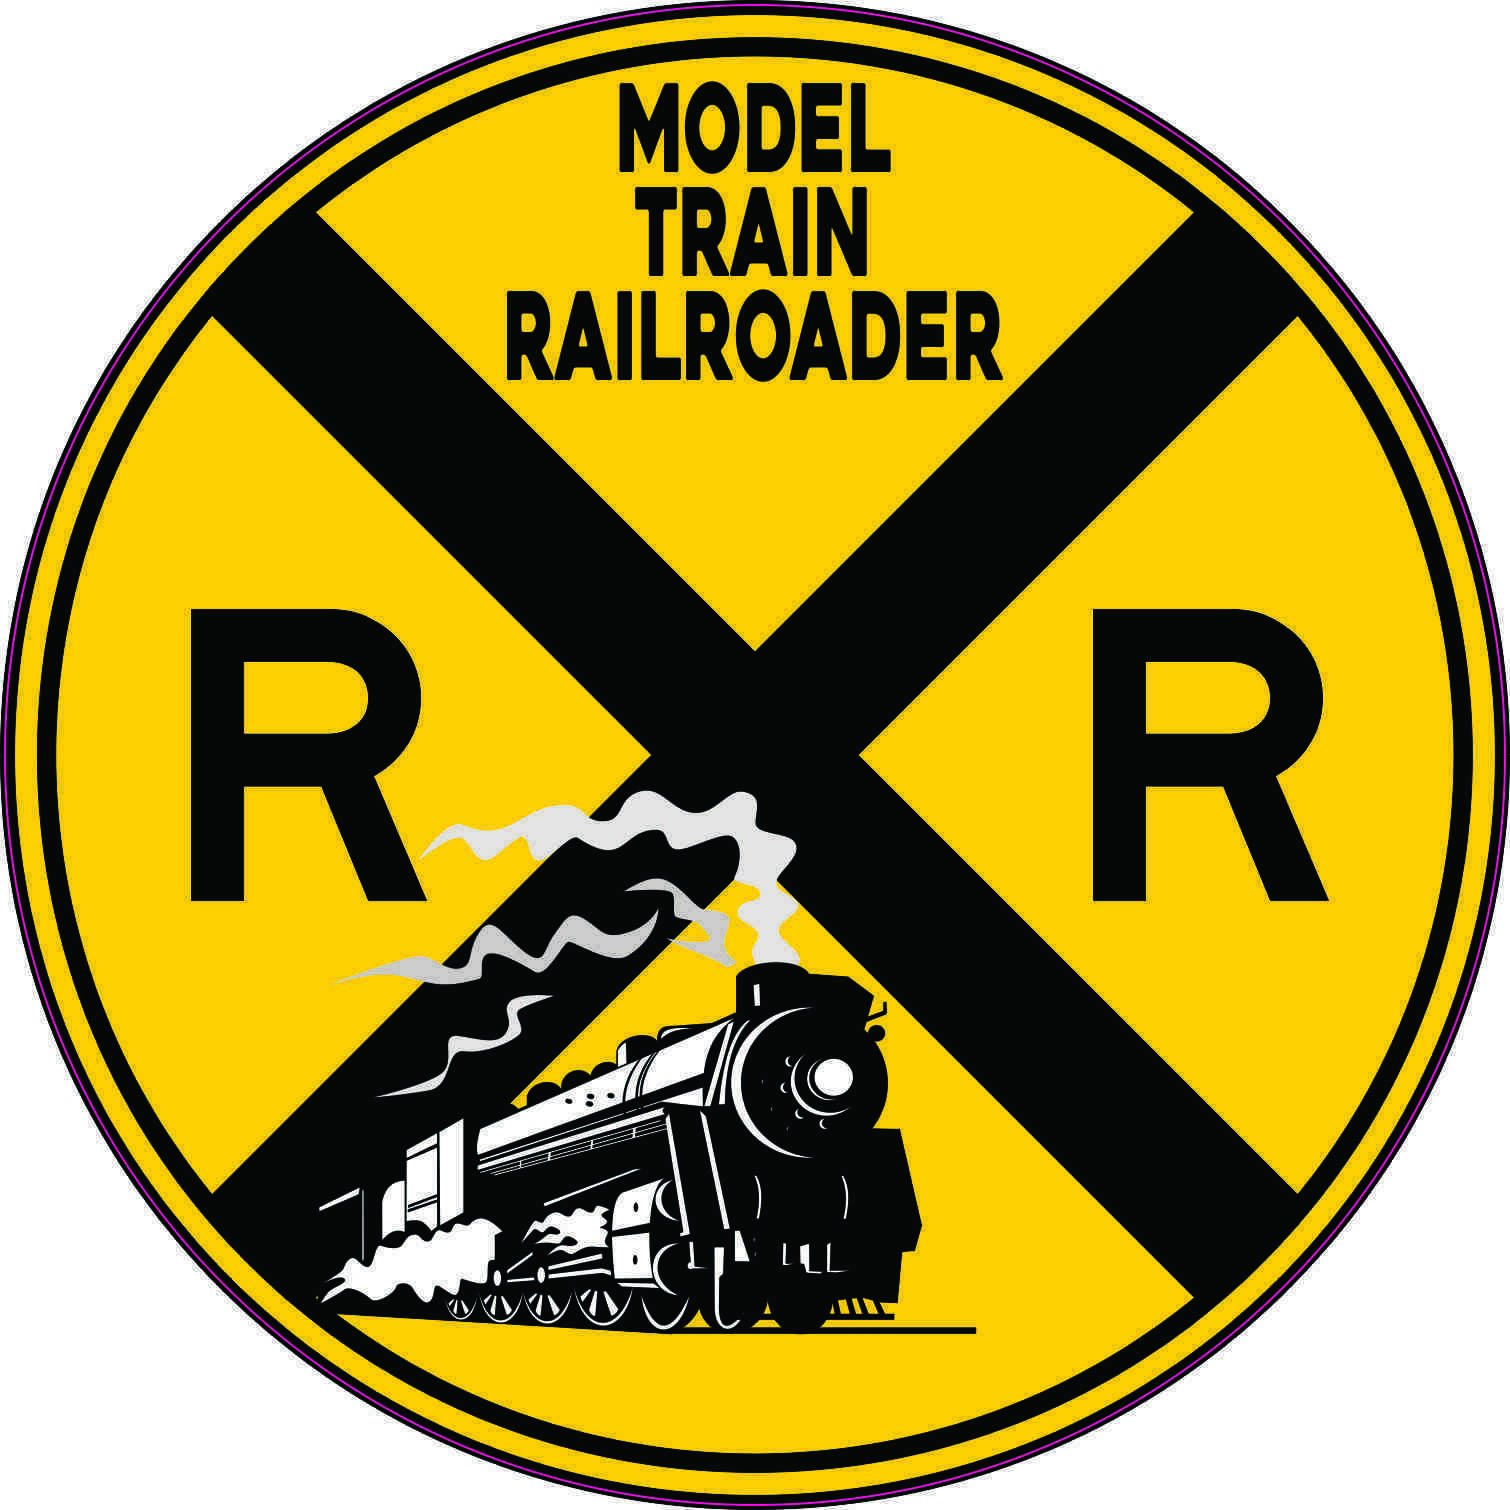 5in x 5in Model Train Railroader Sticker Car Truck Vehicle Bumper Decal